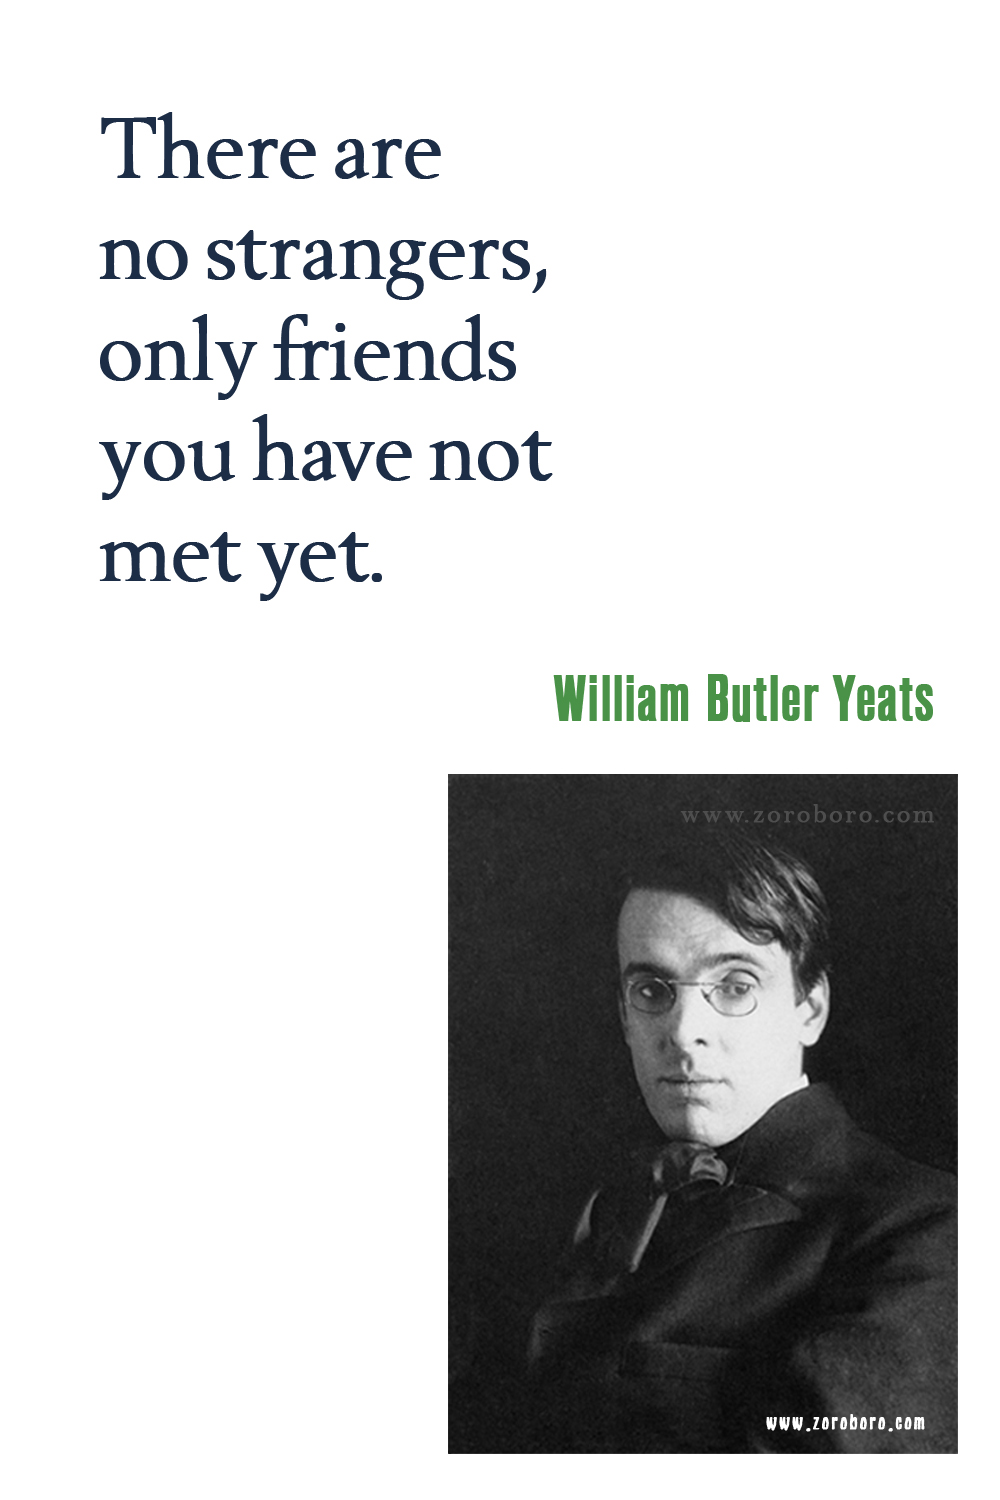 William Butler Yeats Quotes, William Butler Yeats Poems, William Butler Yeats Books Quotes, Poetry, William Butler Yeats Pictures, W. B. Yeats Quotes.